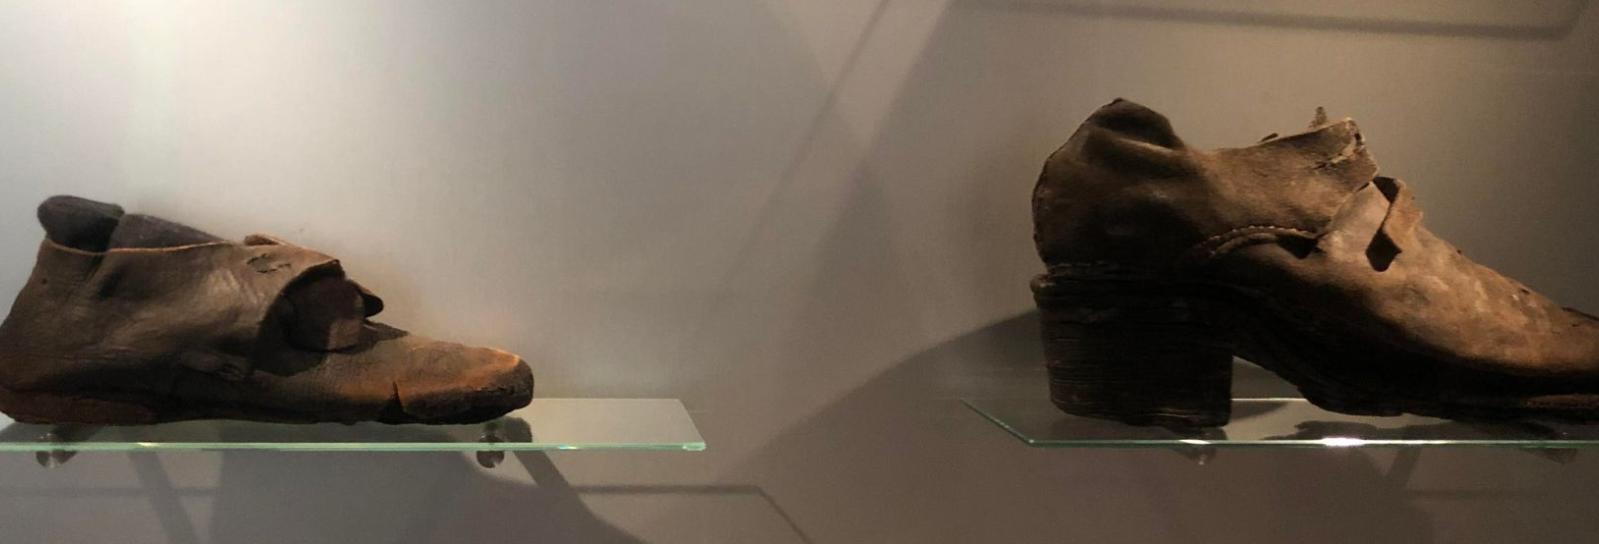 Konsulat Grund hale Hug en hæl og klip en tå | Københavns Museum